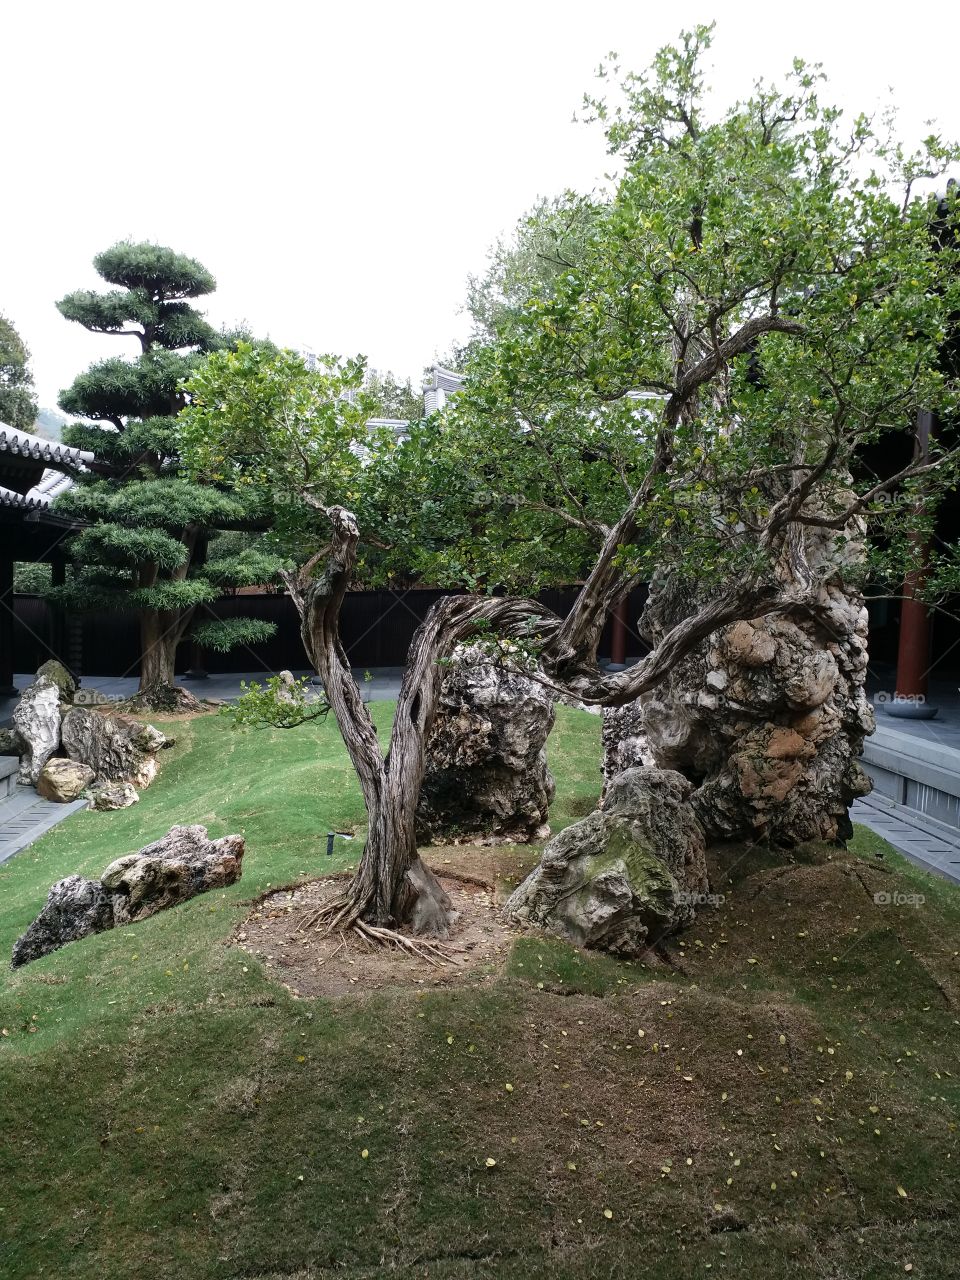 Buddhist garden, HK